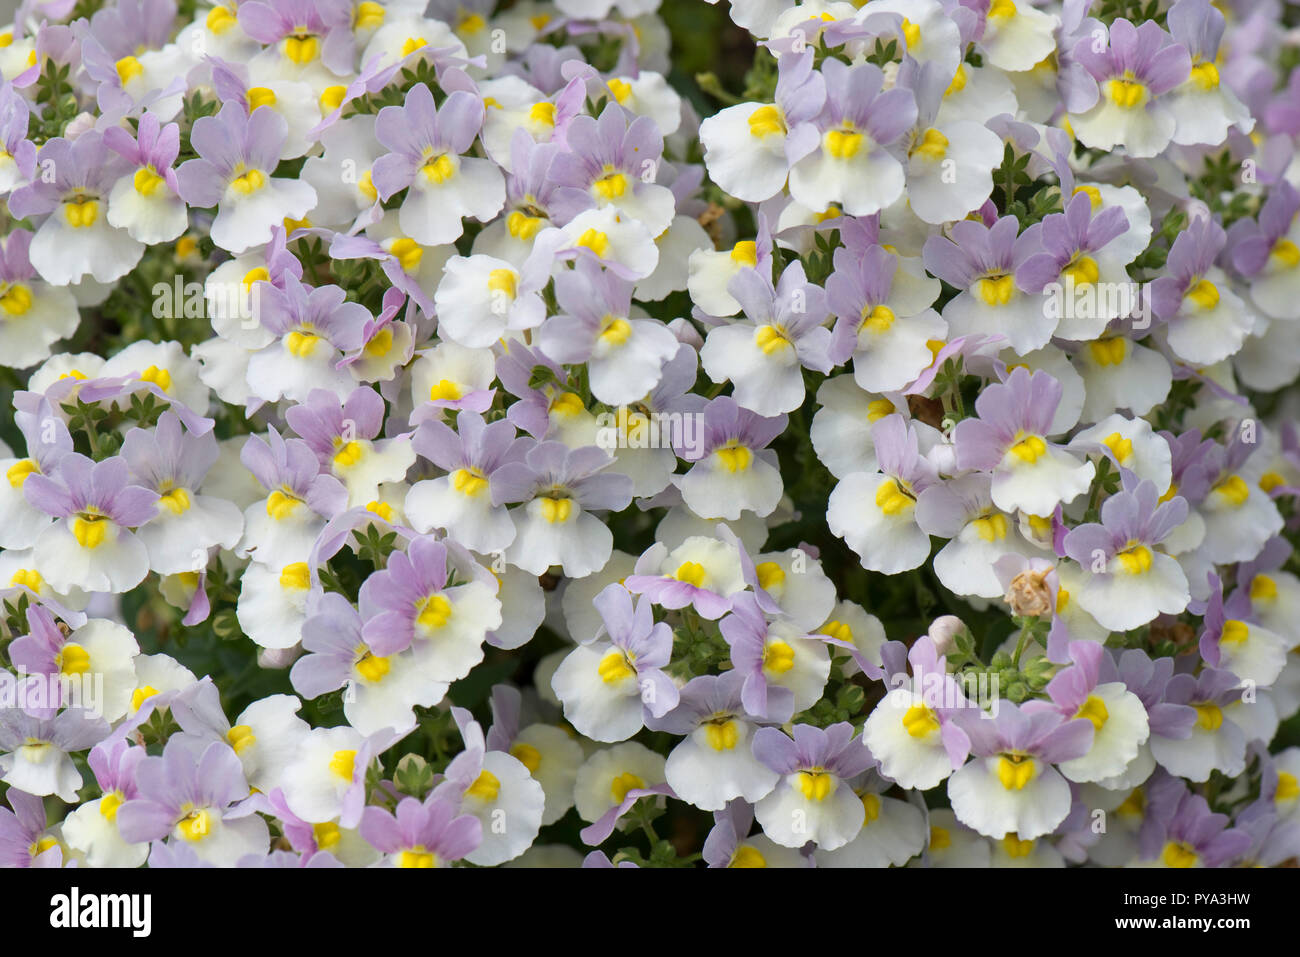 Nemesia 'Bonnet di Pasqua' lilla, fiori bianchi e gialli con un profumo molto forte di vaniglia, giugno Foto Stock